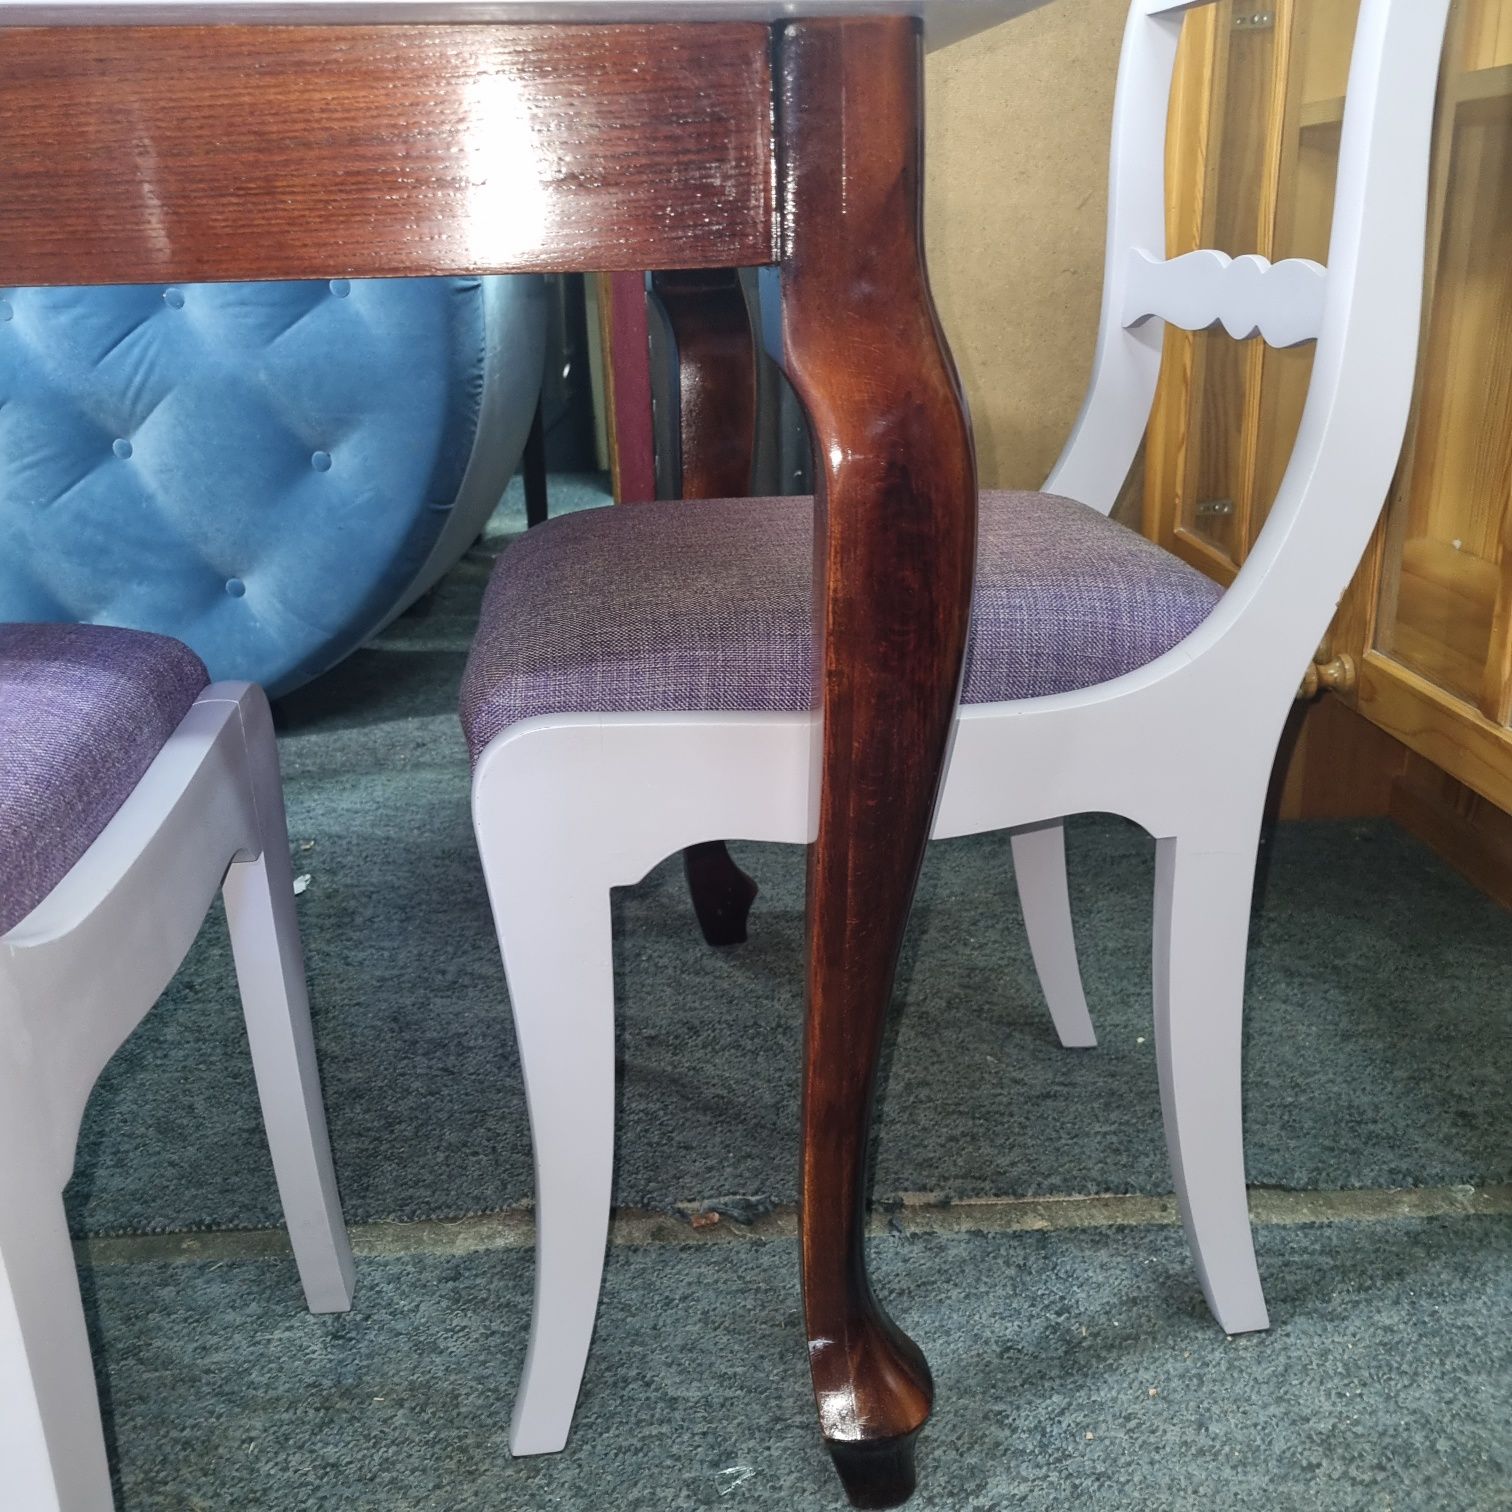 Meble Henryków stół i4 krzesła antyki po modernizacji